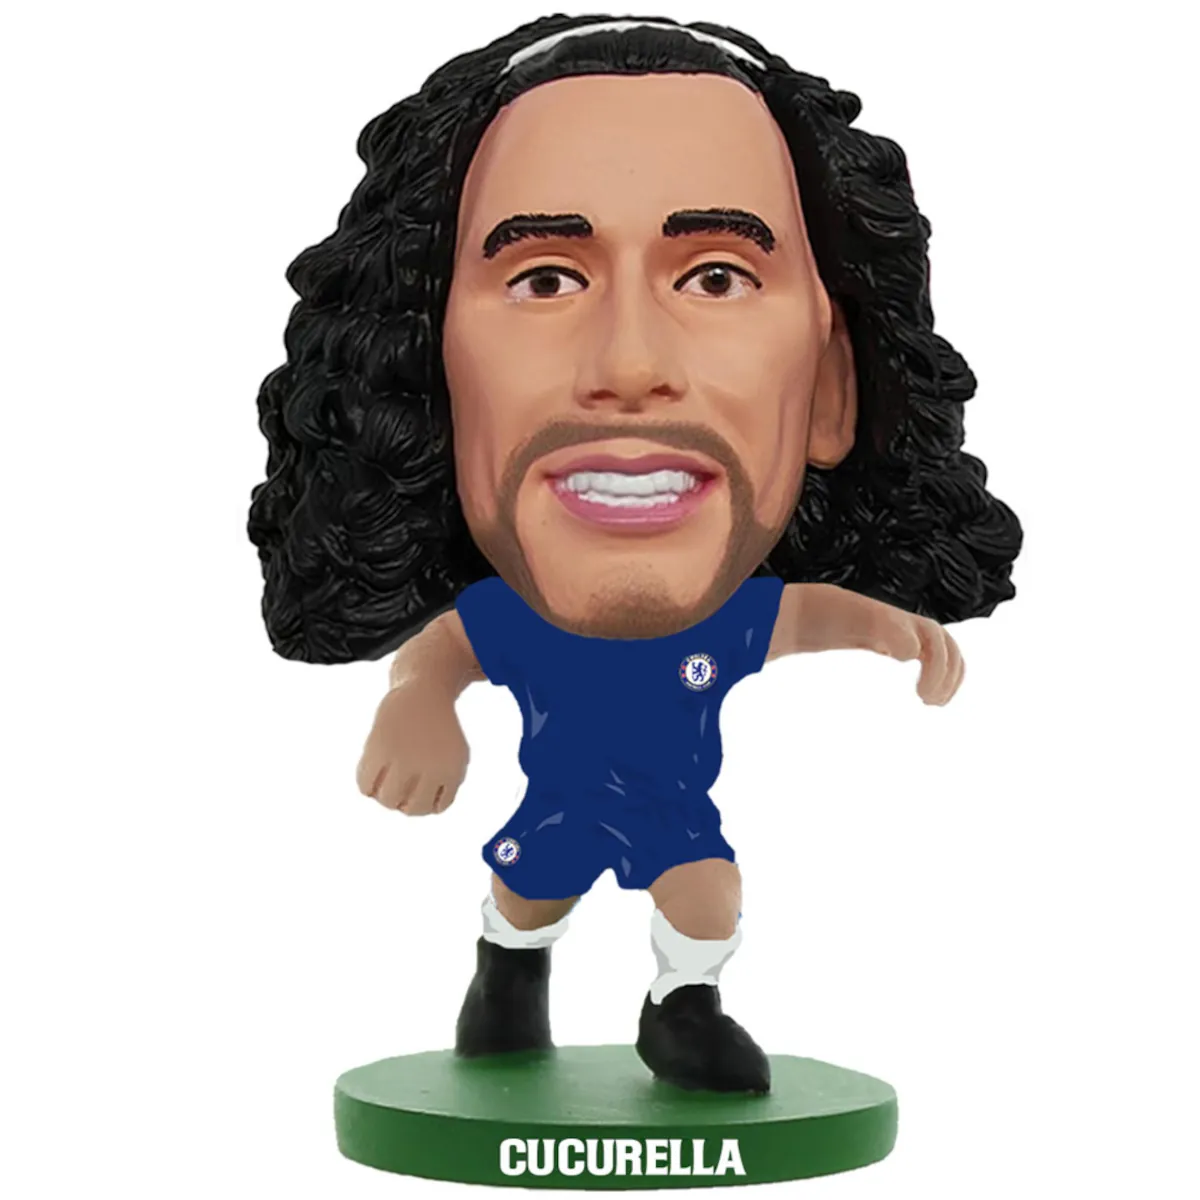 TM-03525 Chelsea FC SoccerStarz Collectable Figure - Marc Cucurella